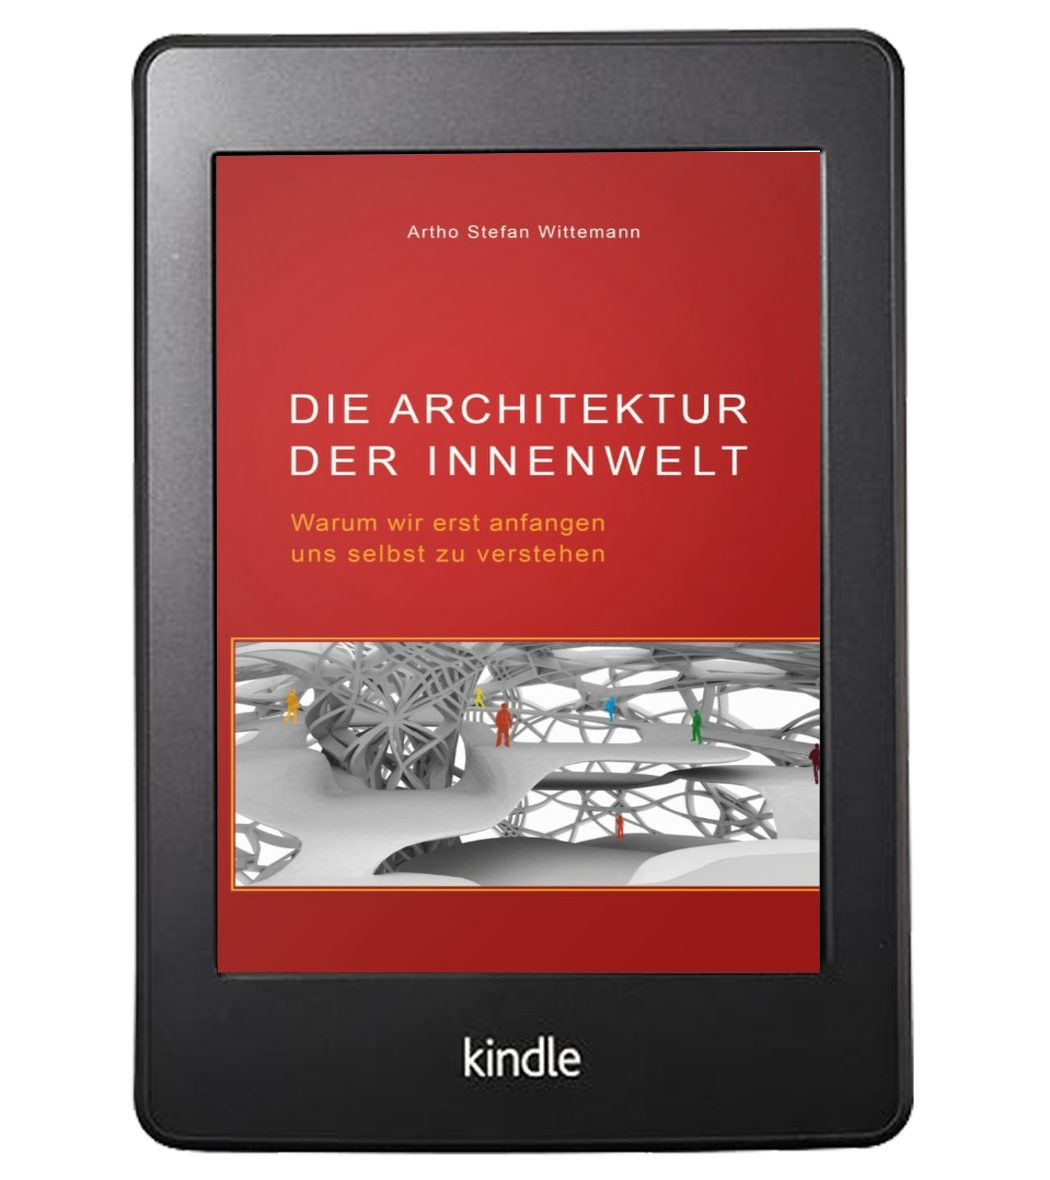 architektur_der_innenwelt_kindle